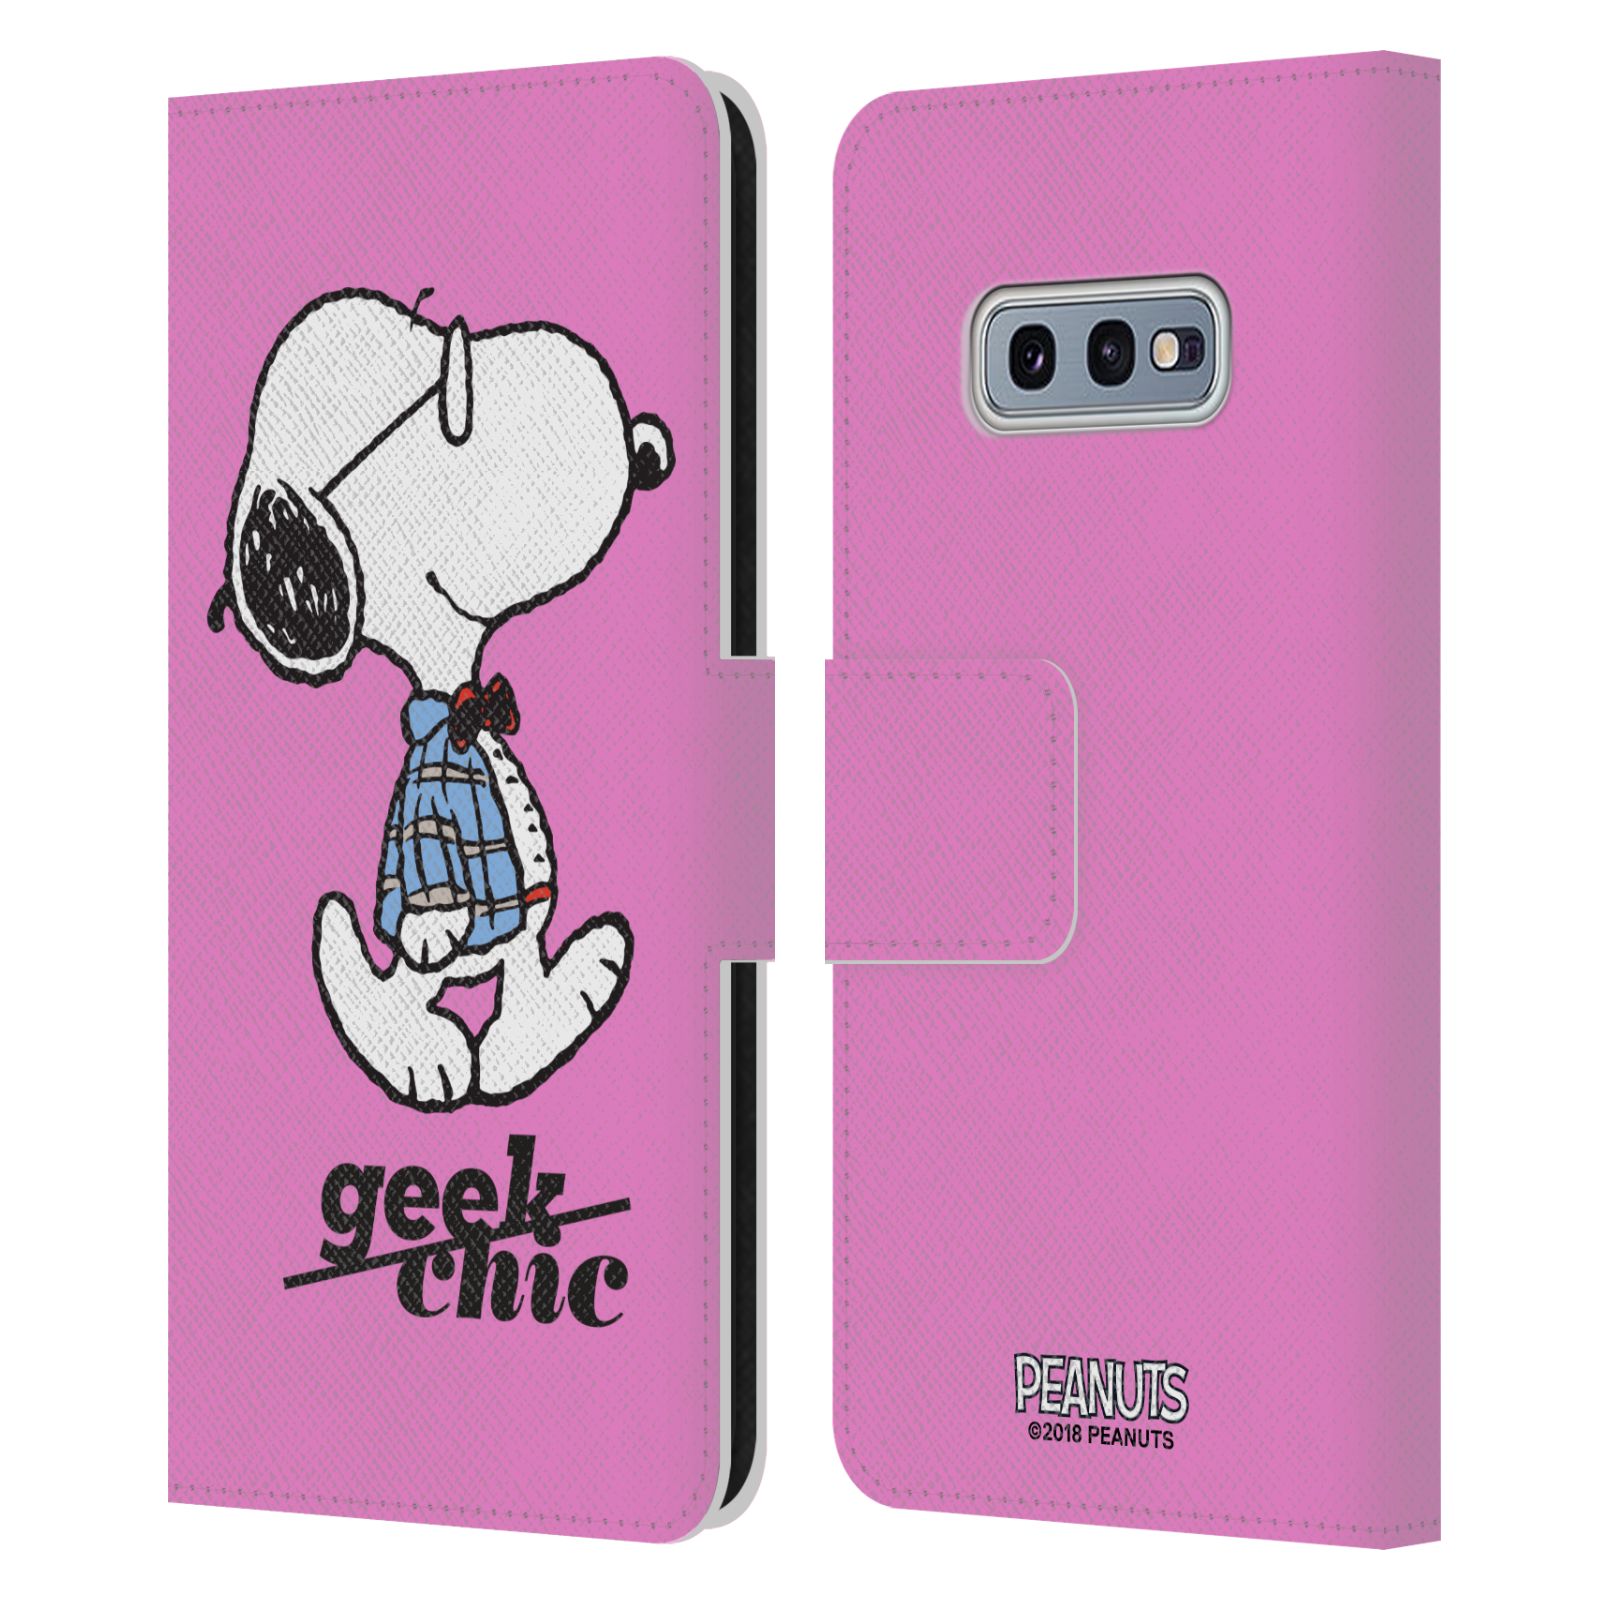 Pouzdro na mobil Samsung Galaxy S10e - Head Case - Peanuts - růžový pejsek snoopy nerd